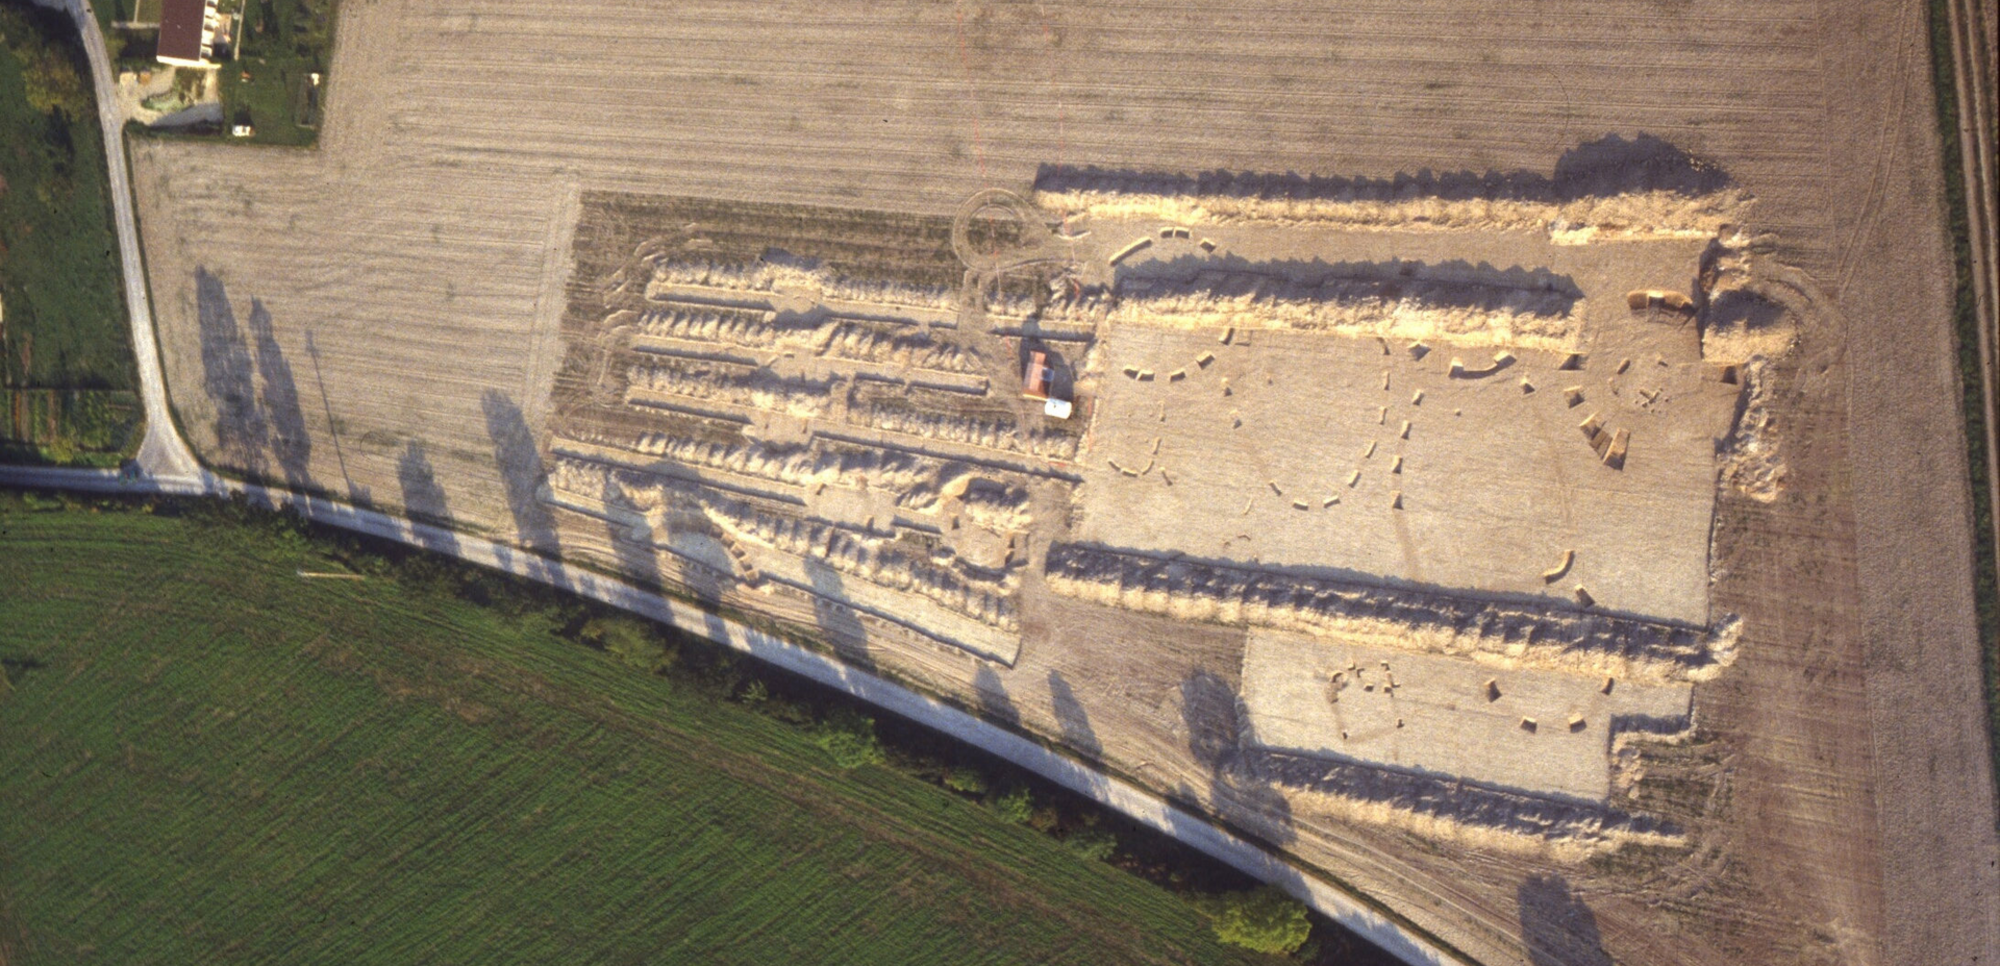 Vue aérienne en cours de fouille en 1987 de la nécropole du "Terrage" à Acy-Romance.